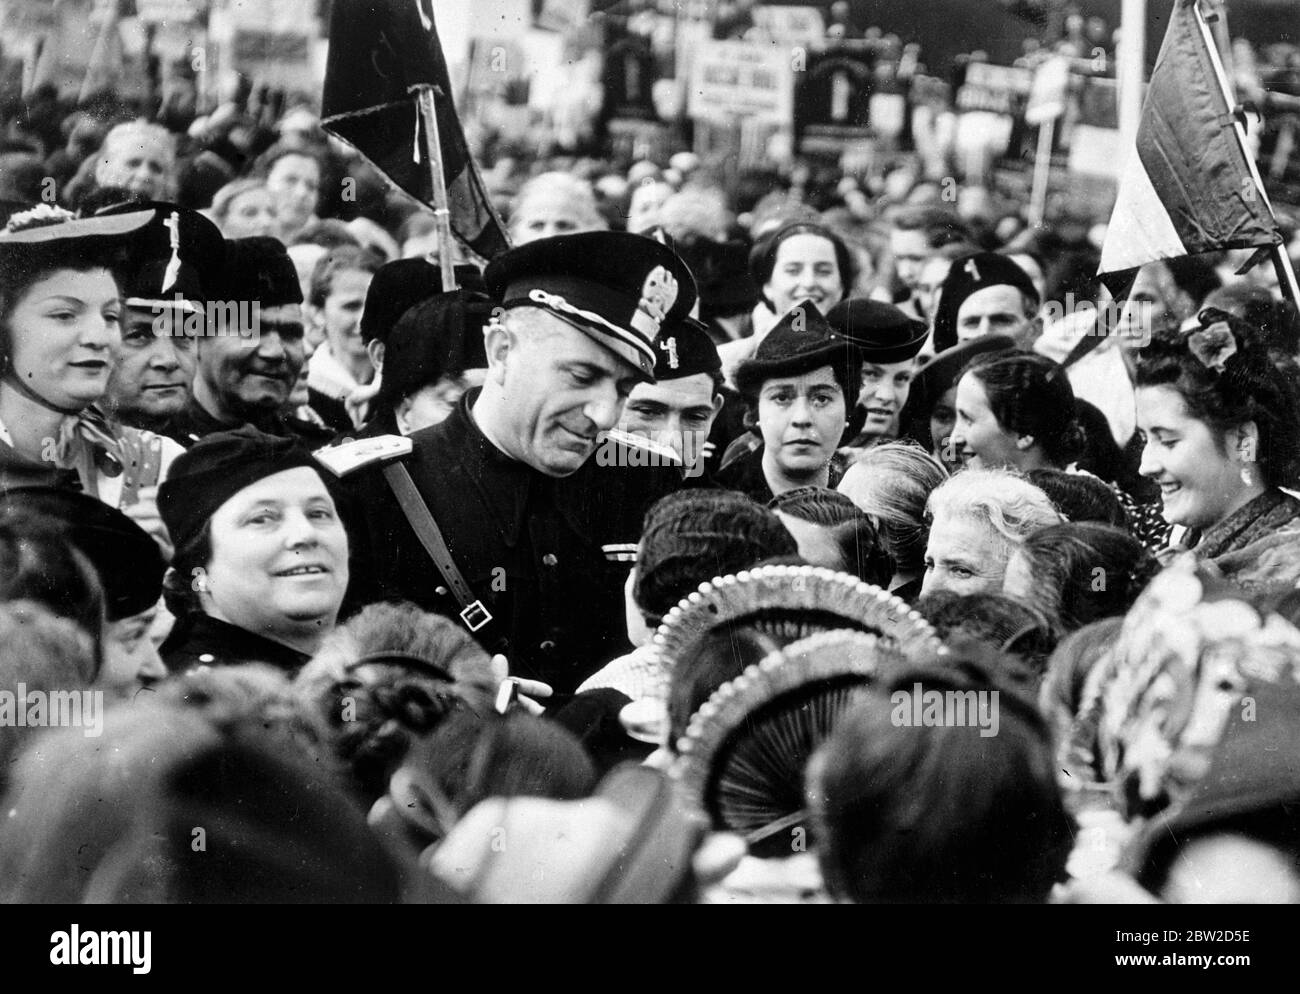 Il Commendatore Rena parenti, capo dell'organizzazione fascista in Lombardia, circondato da donne tifosi, ha partecipato al Festival annuale delle donne fasciste a Monza, in Lombardia. 26 ottobre 1938 Foto Stock